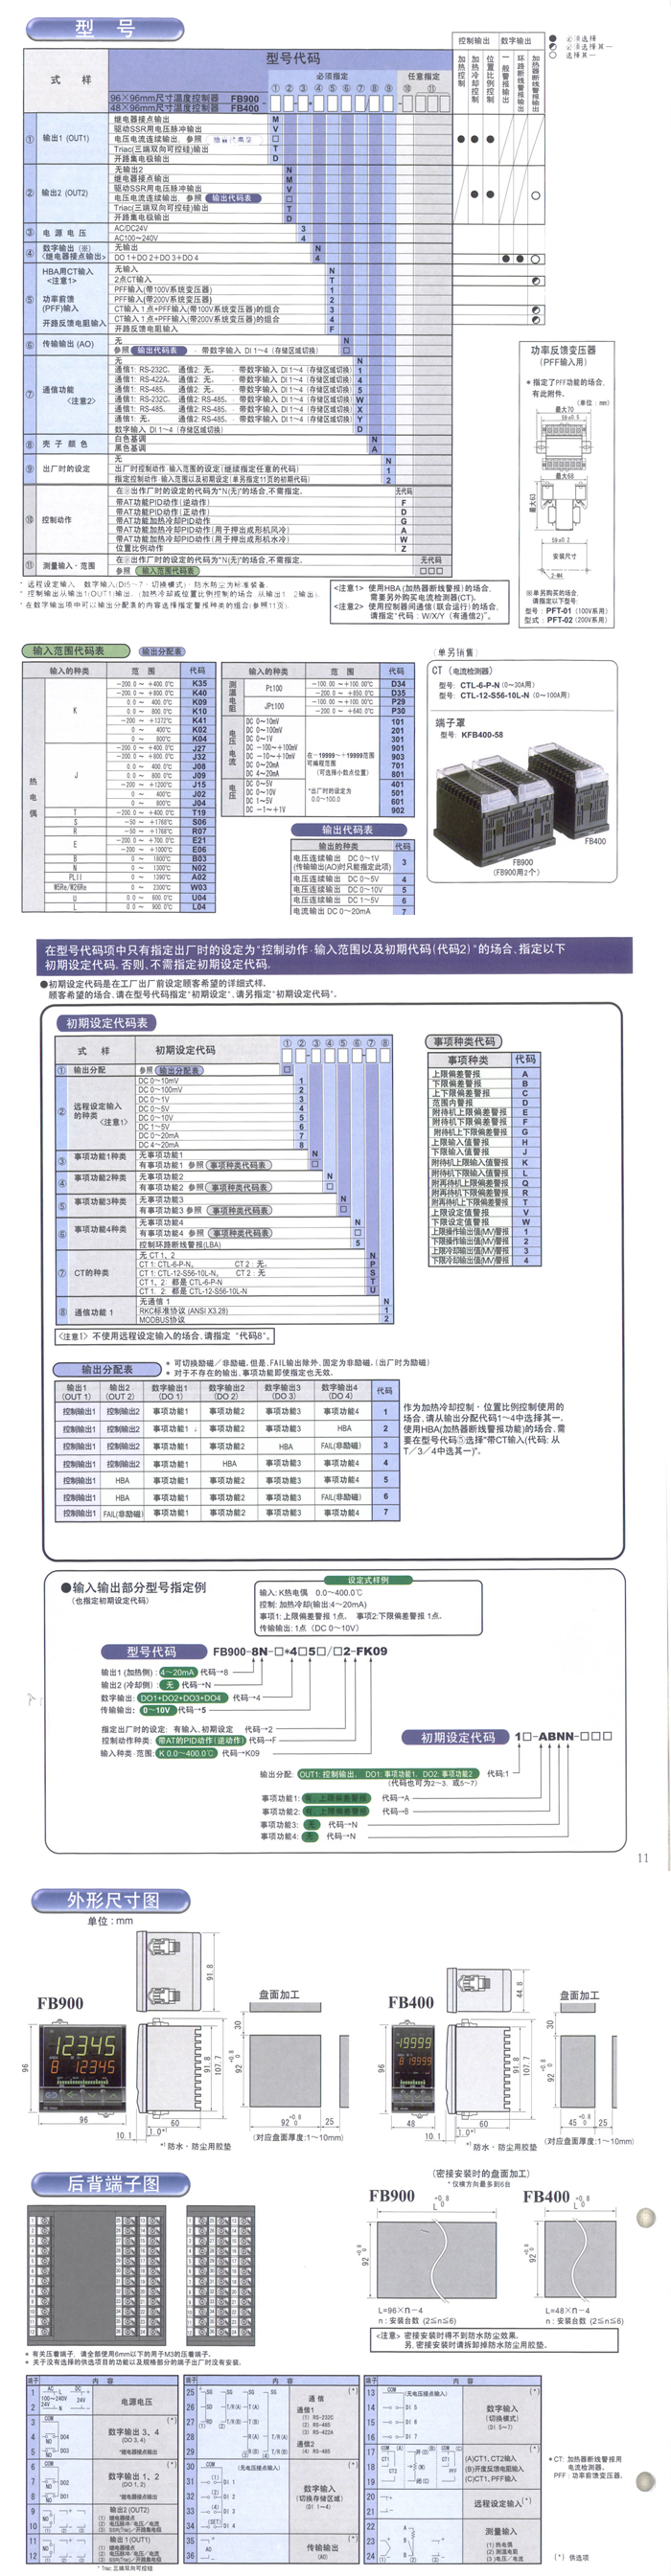 RKC温控器fb900 系列 (图1)